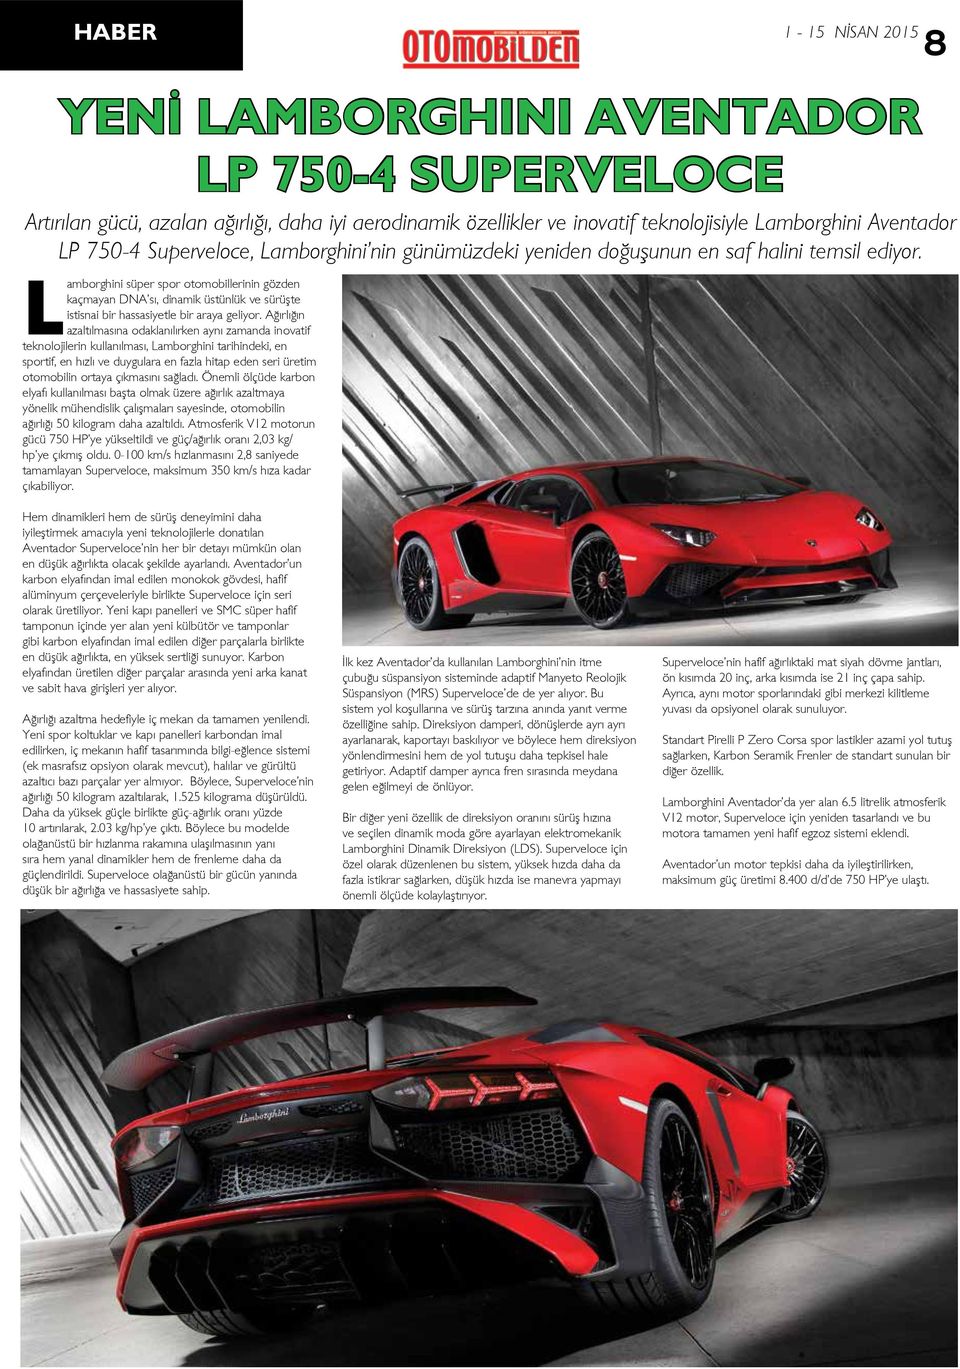 Lamborghini süper spor otomobillerinin gözden kaçmayan DNA sı, dinamik üstünlük ve sürüşte istisnai bir hassasiyetle bir araya geliyor.